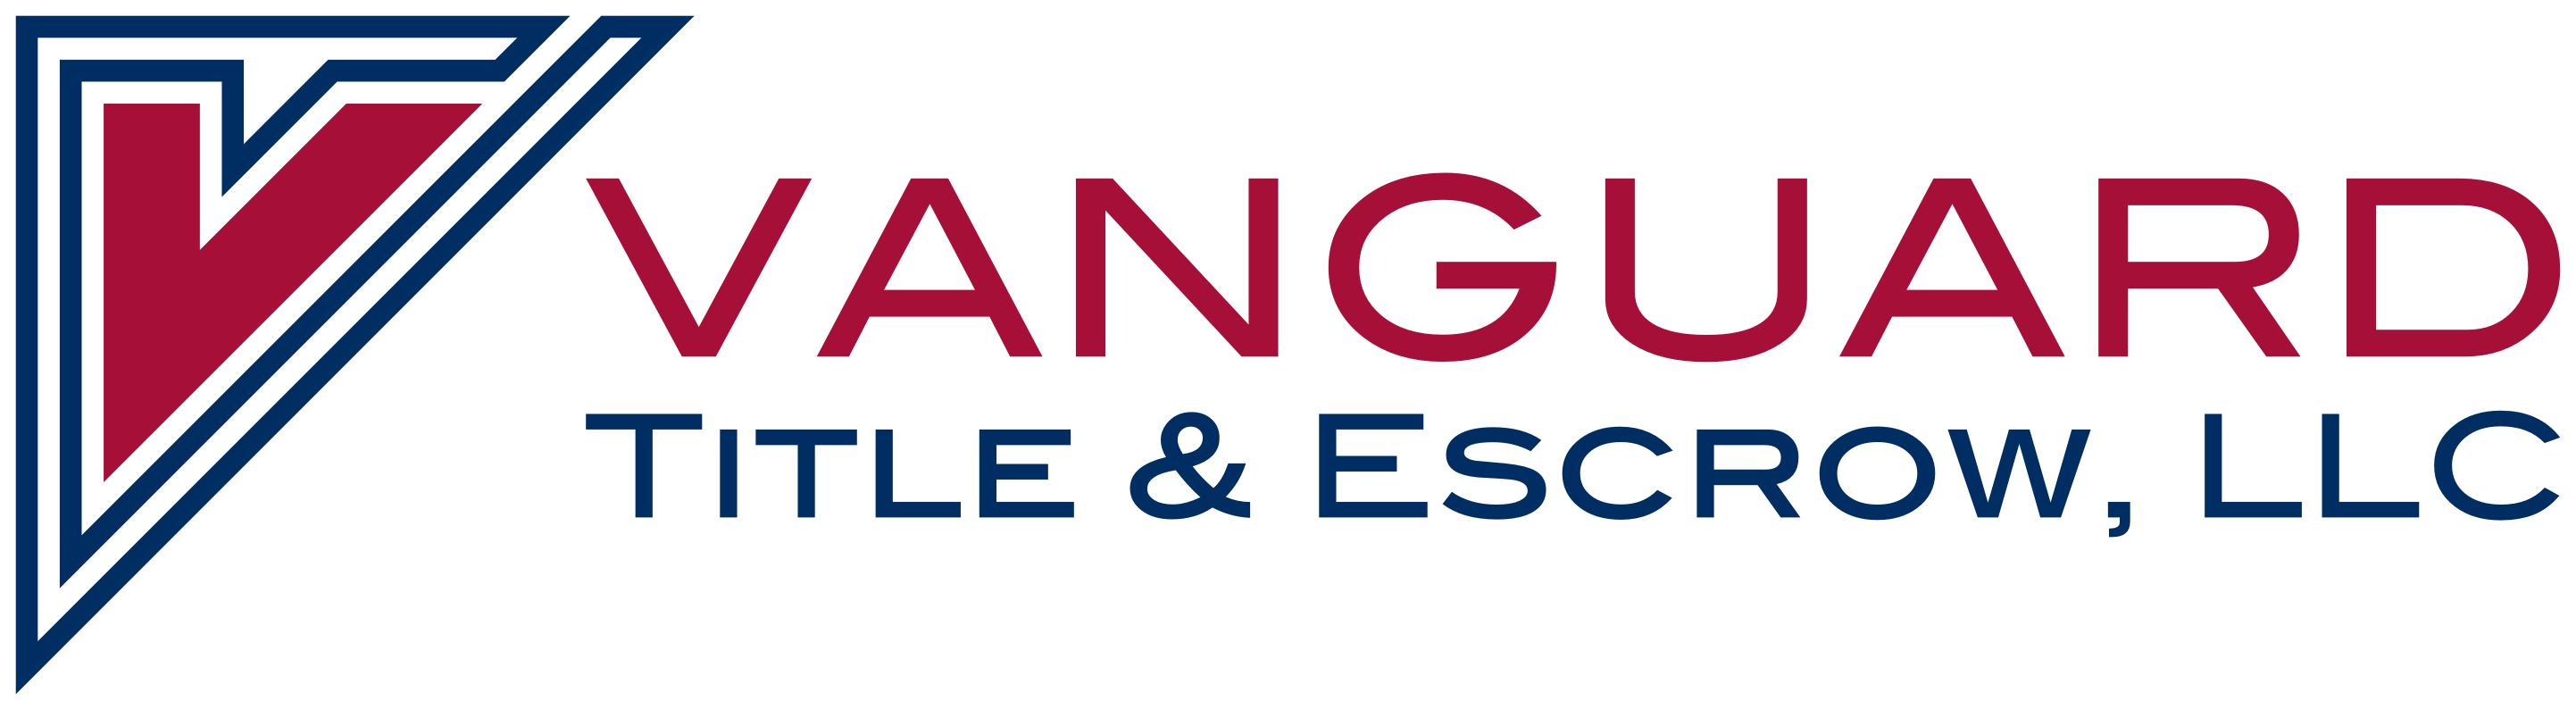 Vanguard Title & Escrow, LLC